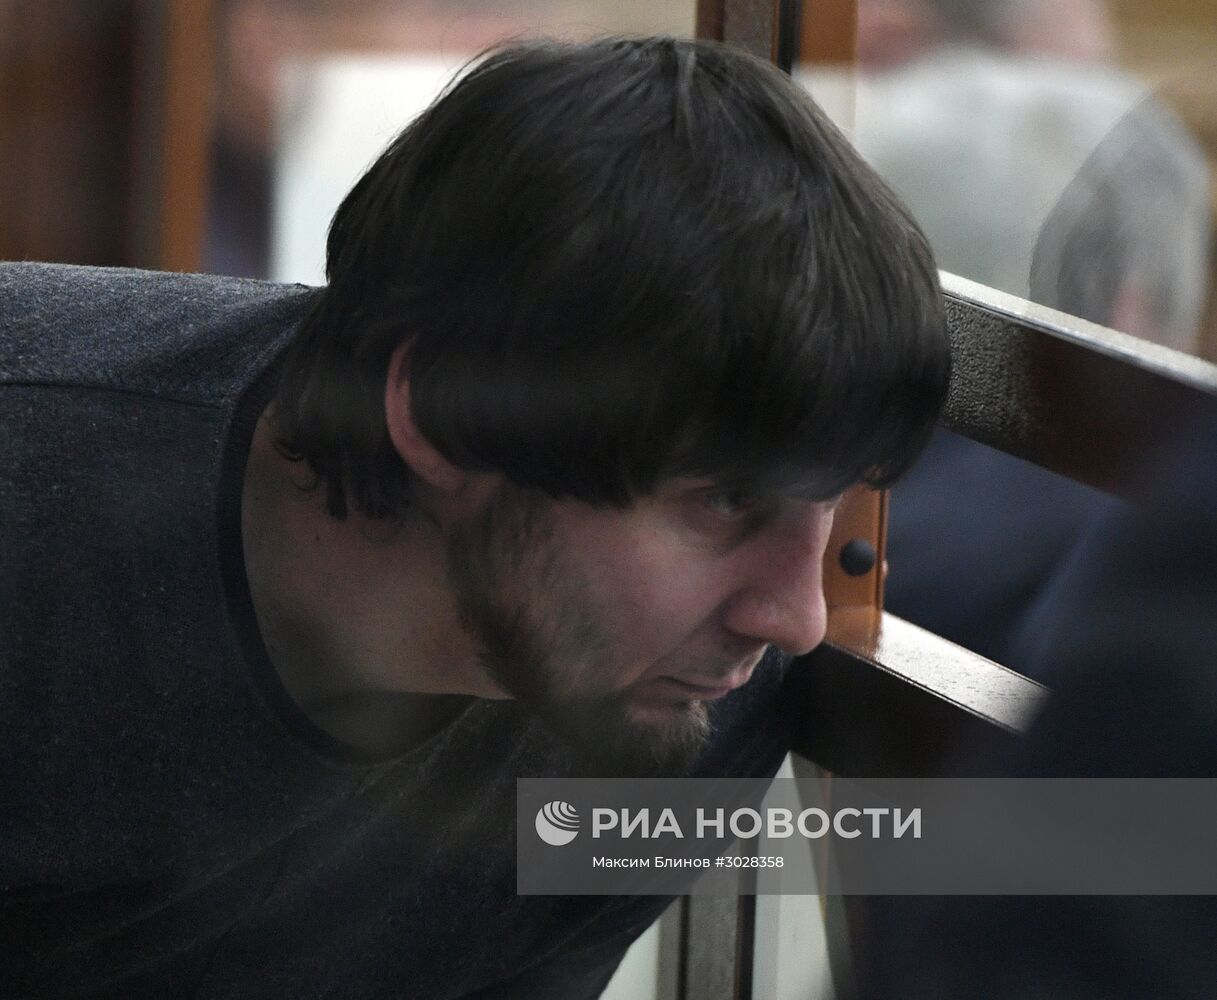 Заседание суда по делу об убийстве политика Б.Немцова